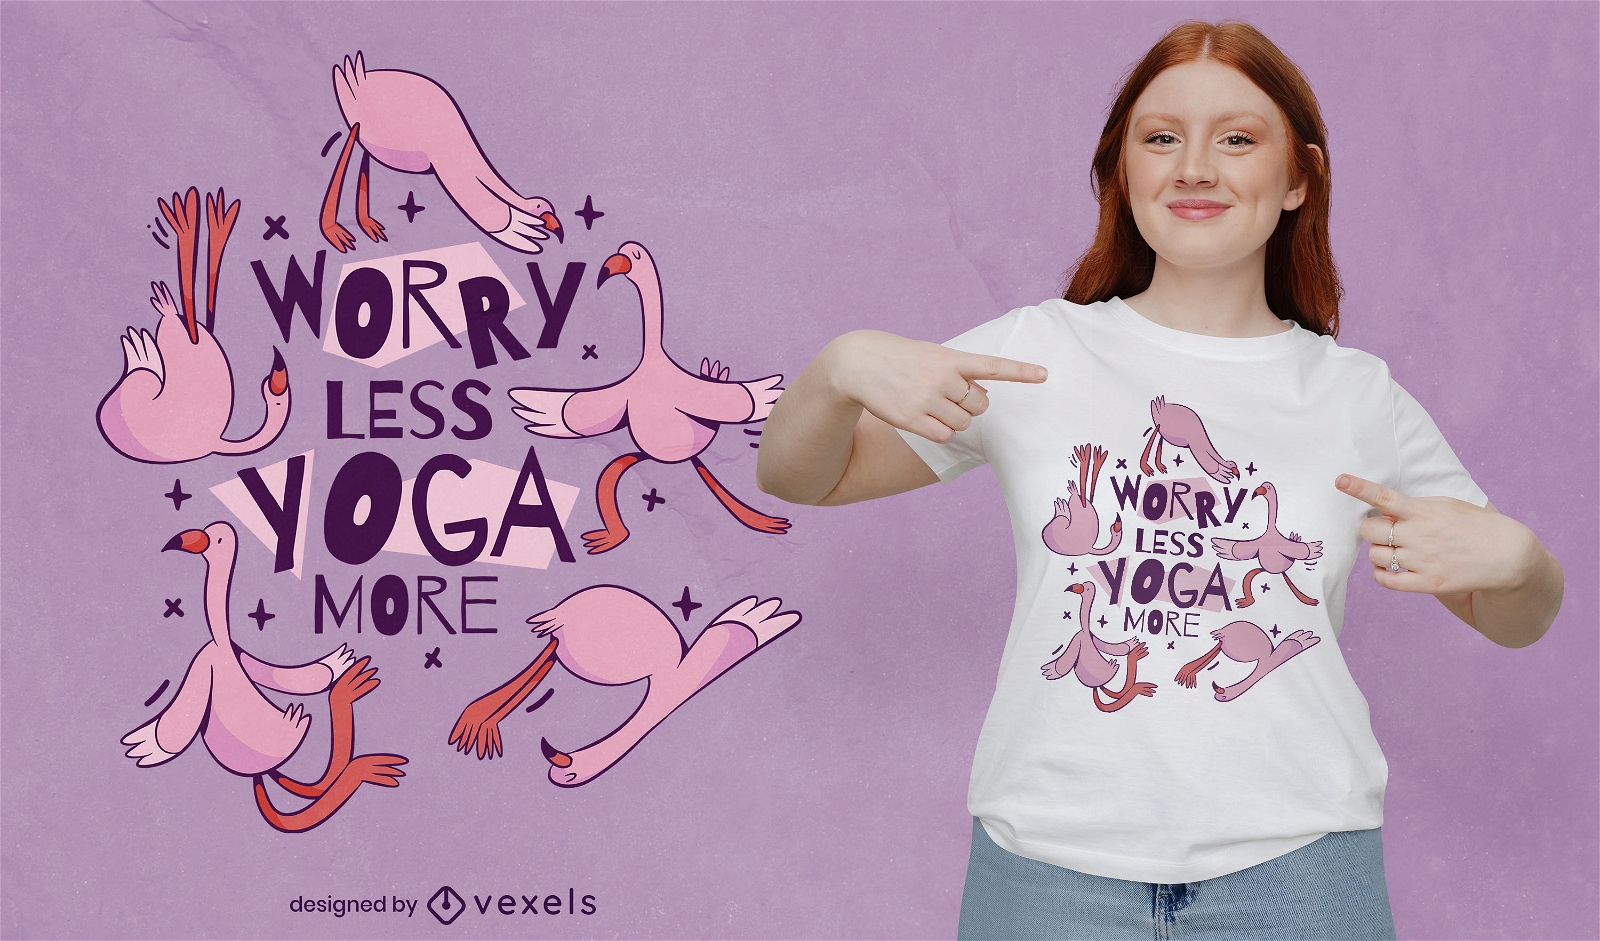 P?ssaro flamingo fazendo design de camiseta para ioga